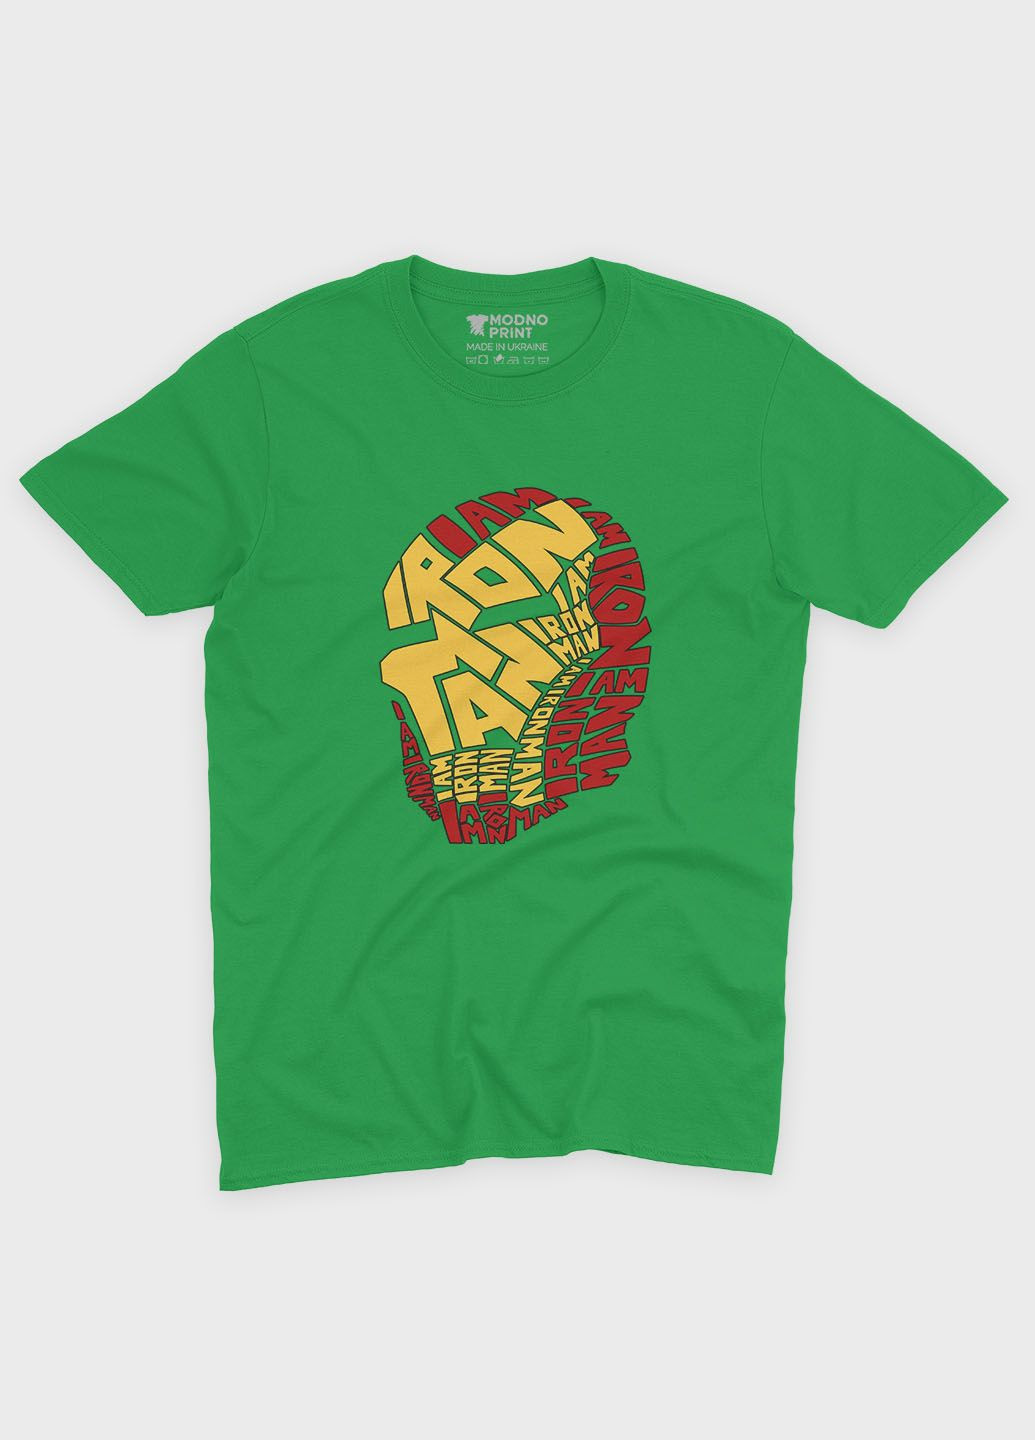 Зелена демісезонна футболка для хлопчика з принтом супергероя - залізна людина (ts001-1-keg-006-016-001-b) Modno